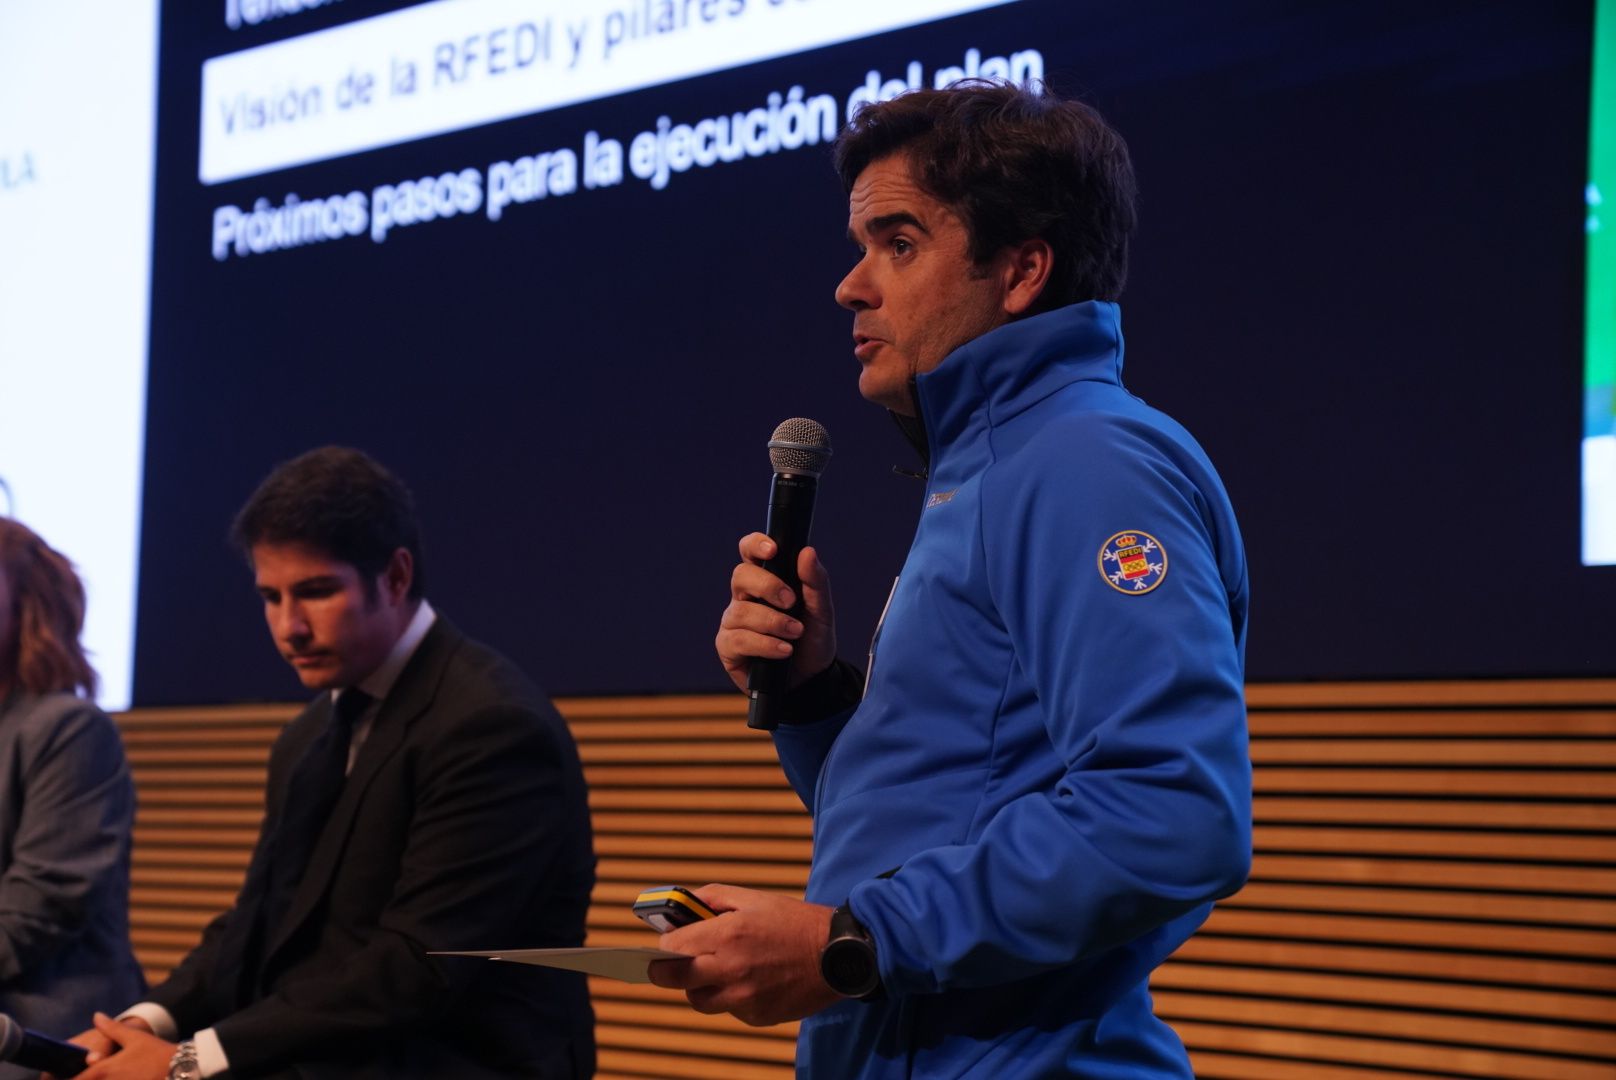 Presentación en Madrid de los equipos deportivos de la RFEDI 2022-2023